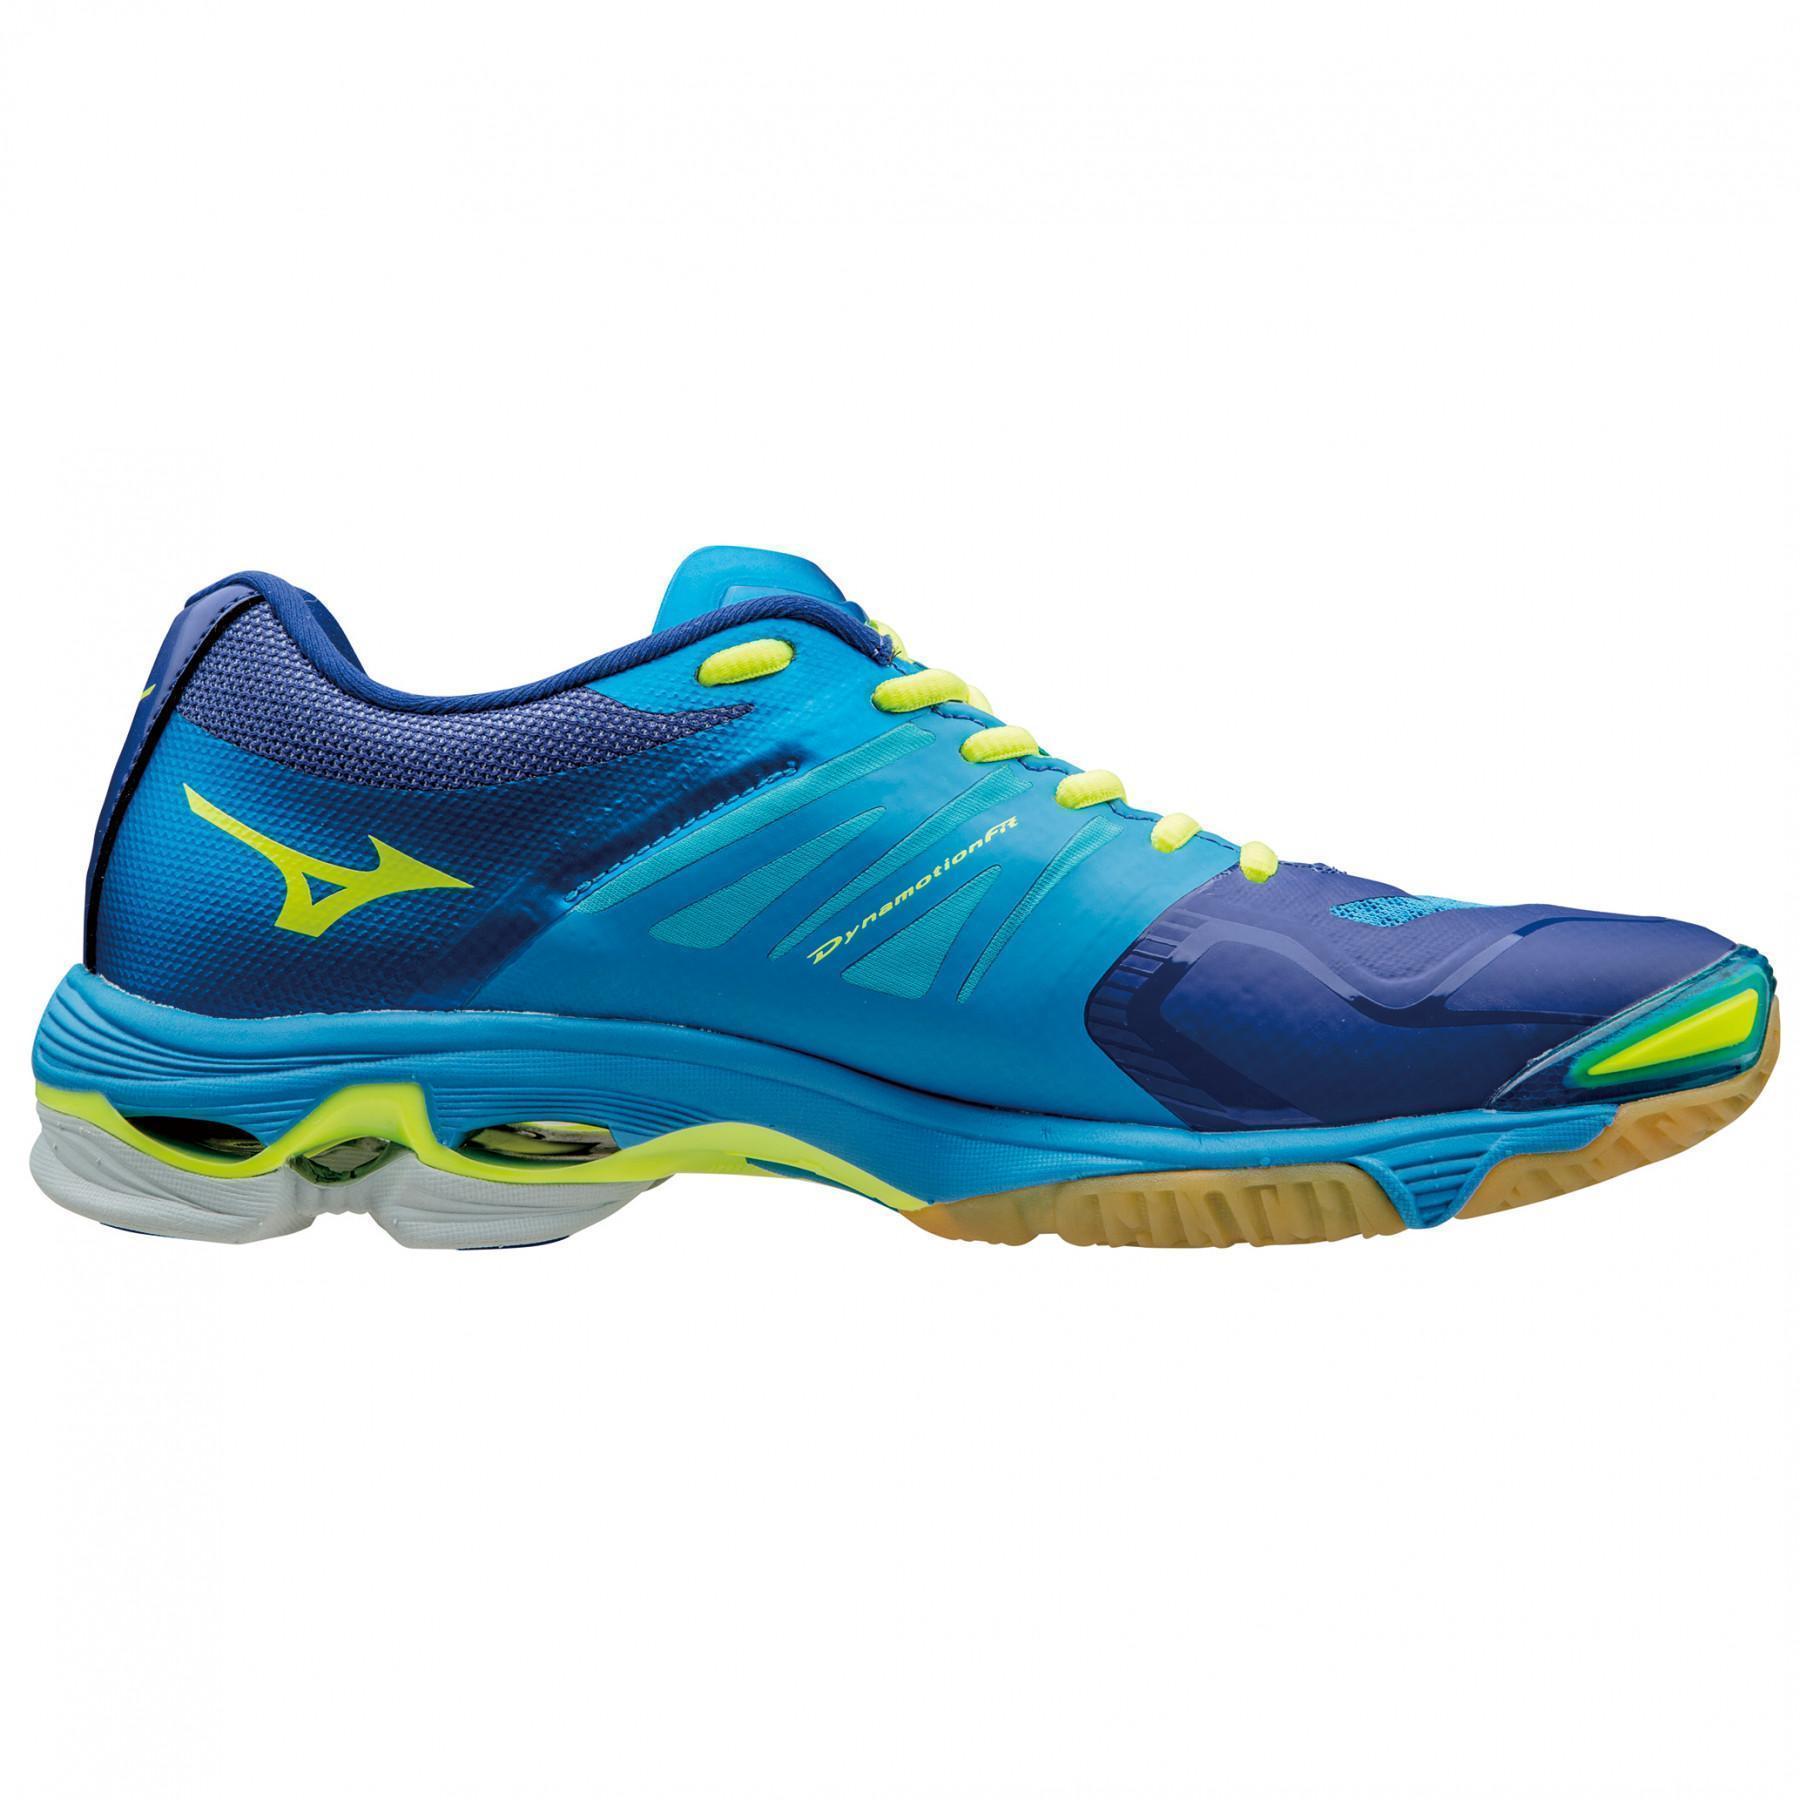 Shoes Mizuno Wave Lightning Z2 bleu/jaune/bleu clair